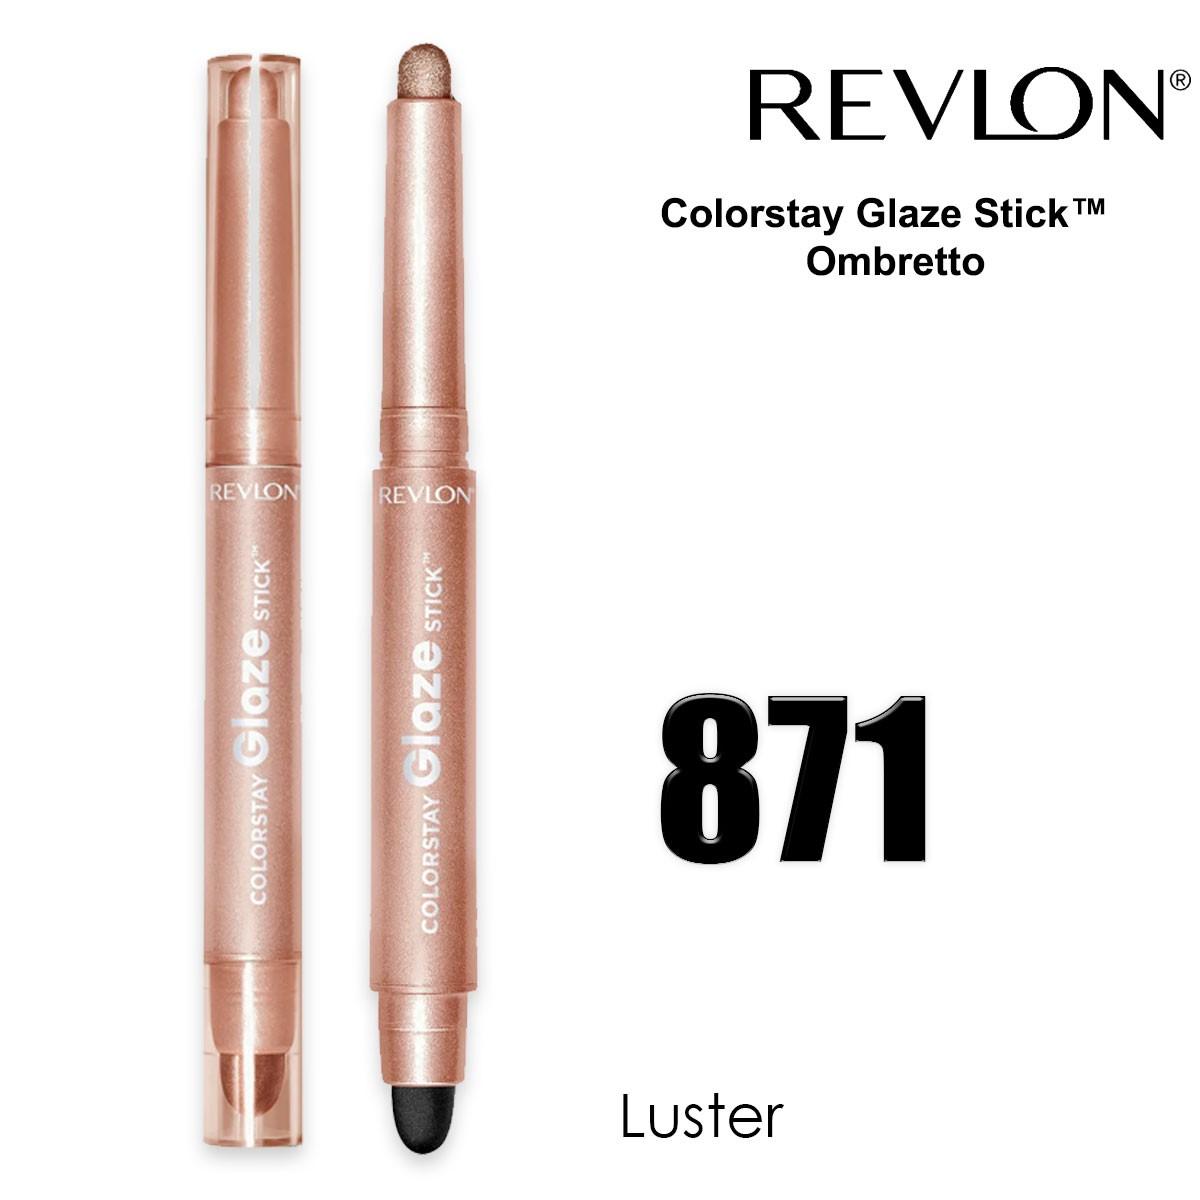 Revlon colorstay glaze stick luster 871